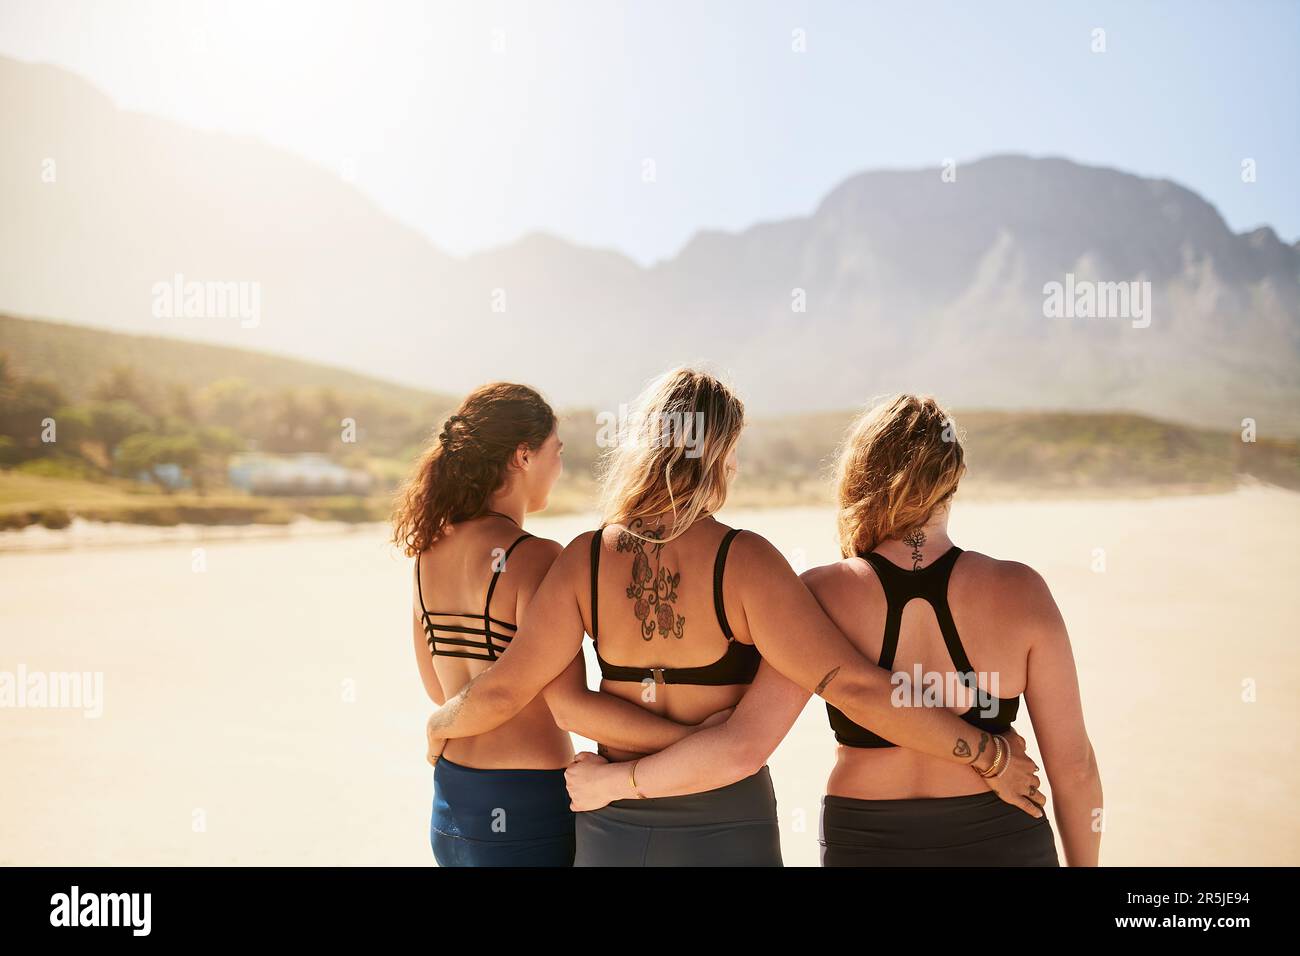 Entourez-vous de personnes qui restent calmes. Vue arrière de trois jeunes yogis debout sur la plage. Banque D'Images